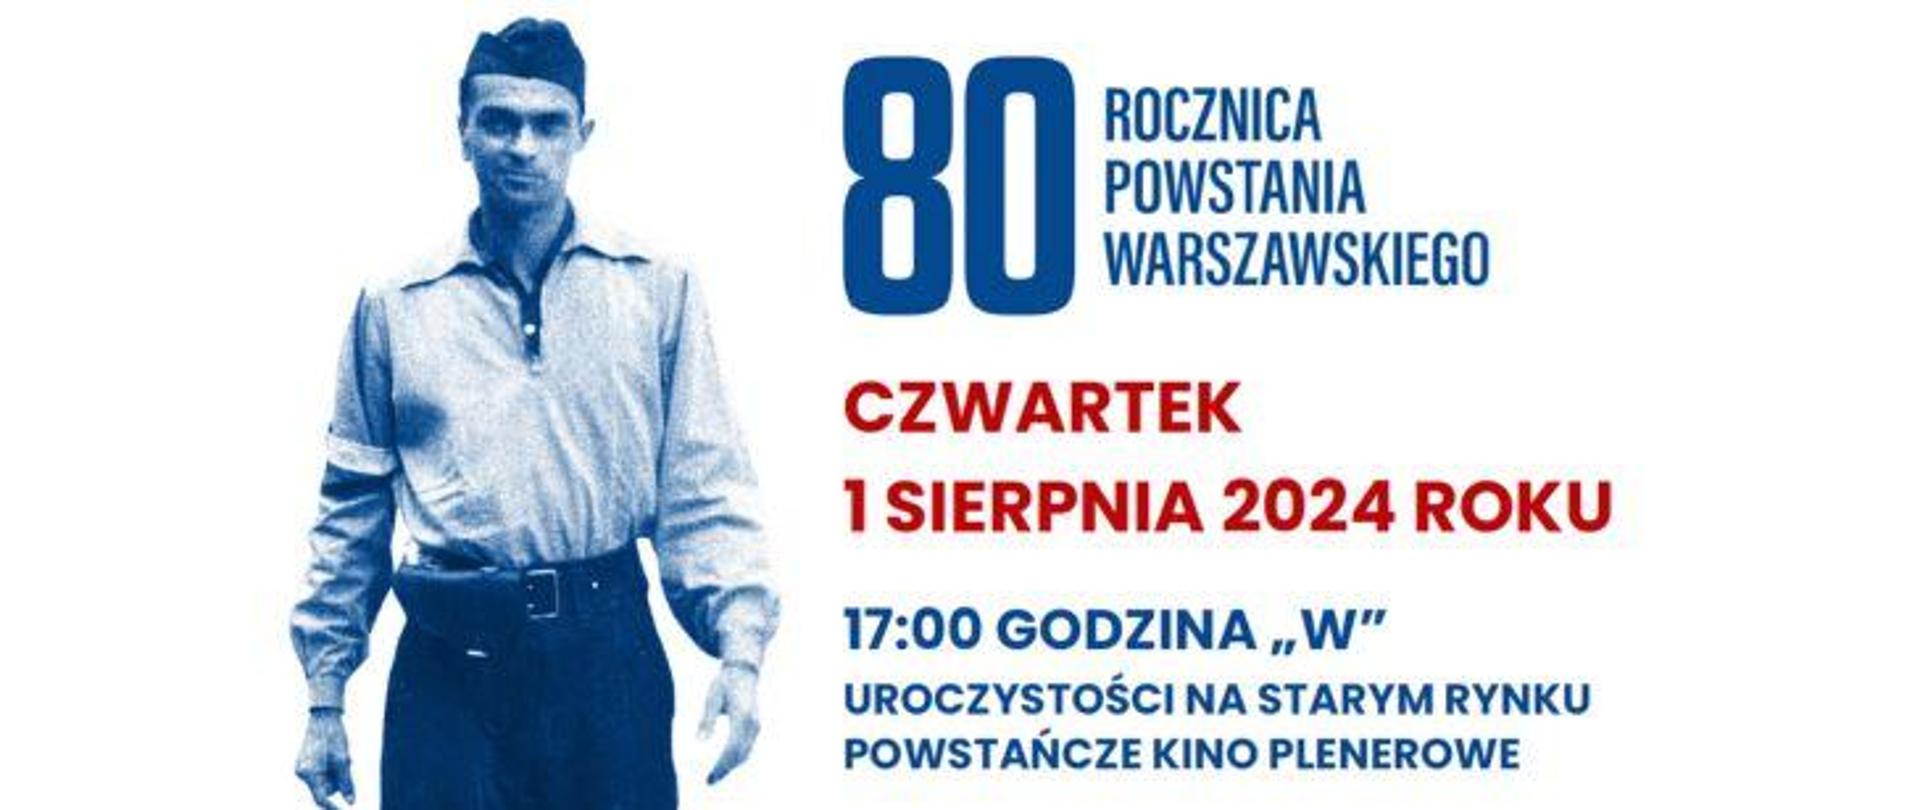 80 rocznica powstania warszawskiego banner